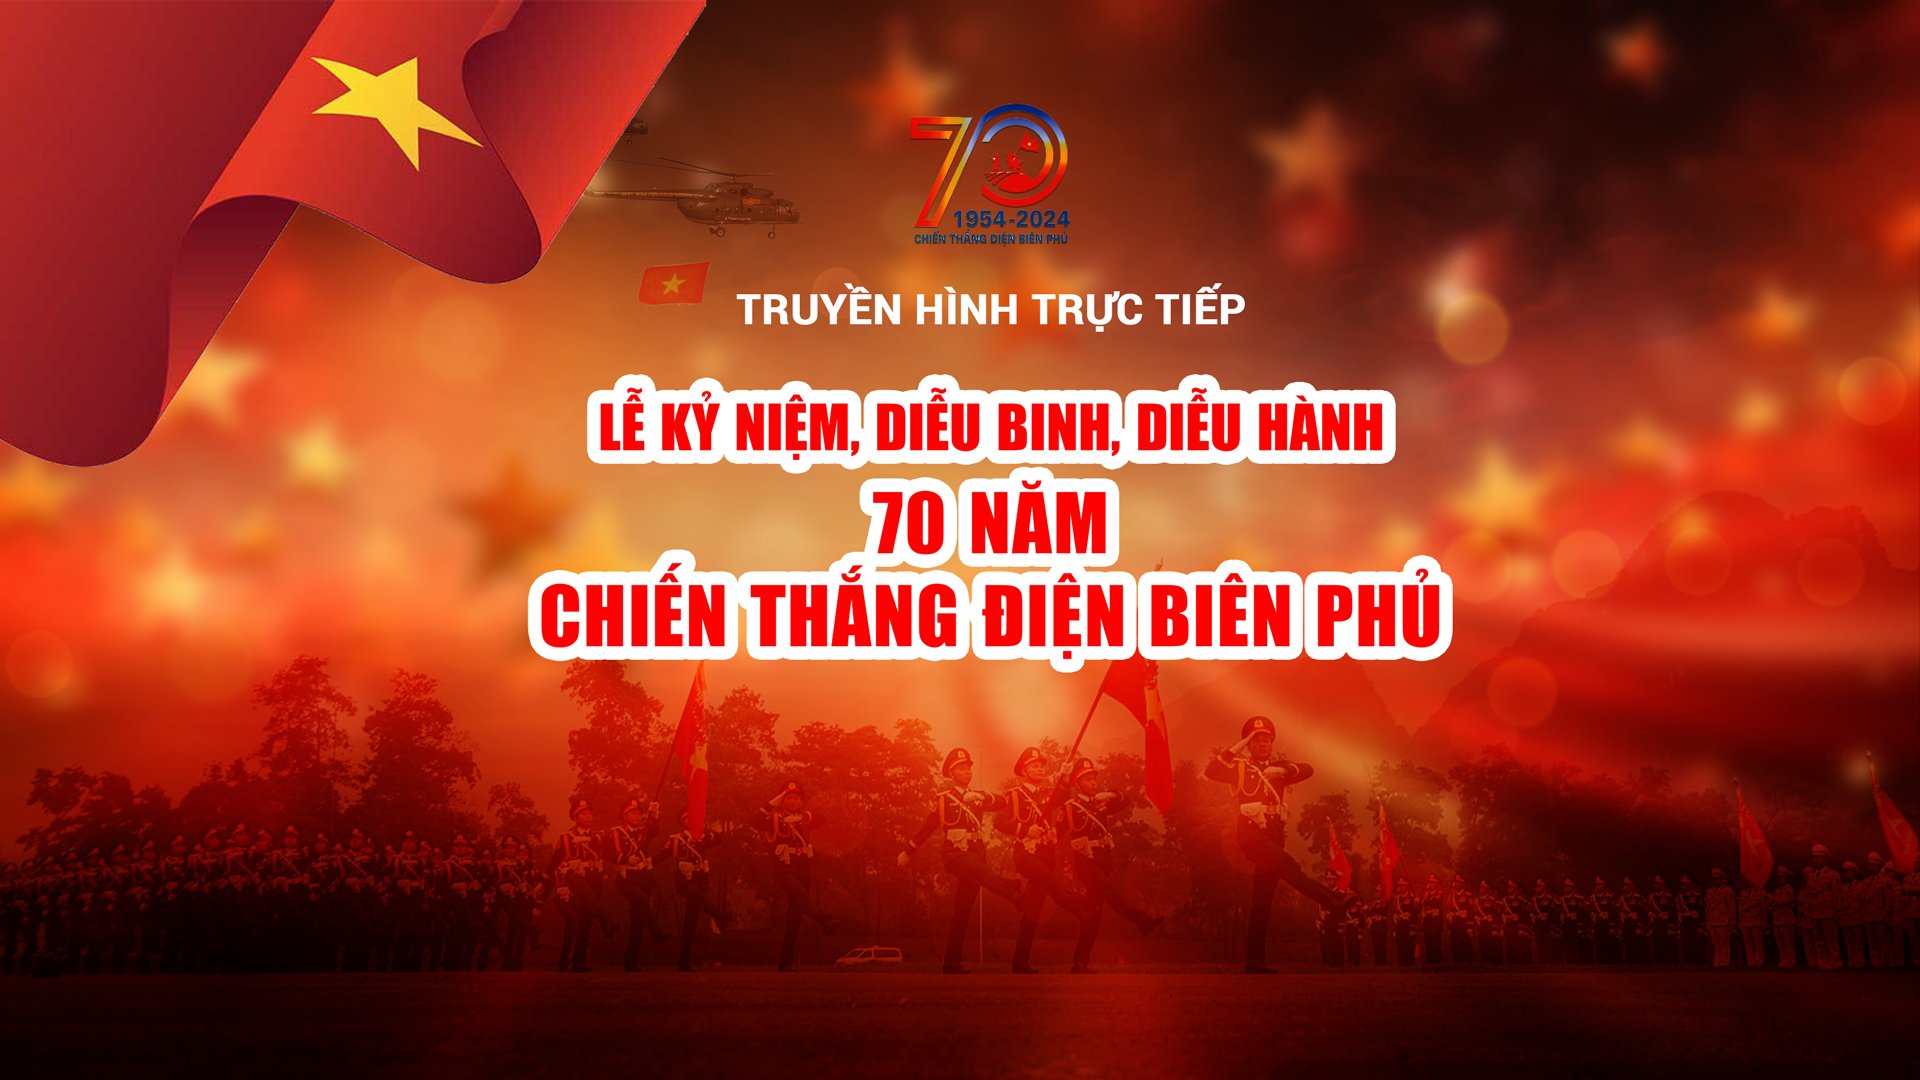 Truyền hình trực tiếp Lễ kỷ niệm, diễu binh, diễu hành 70 năm Chiến thắng Điện Biên Phủ- Ảnh 1.